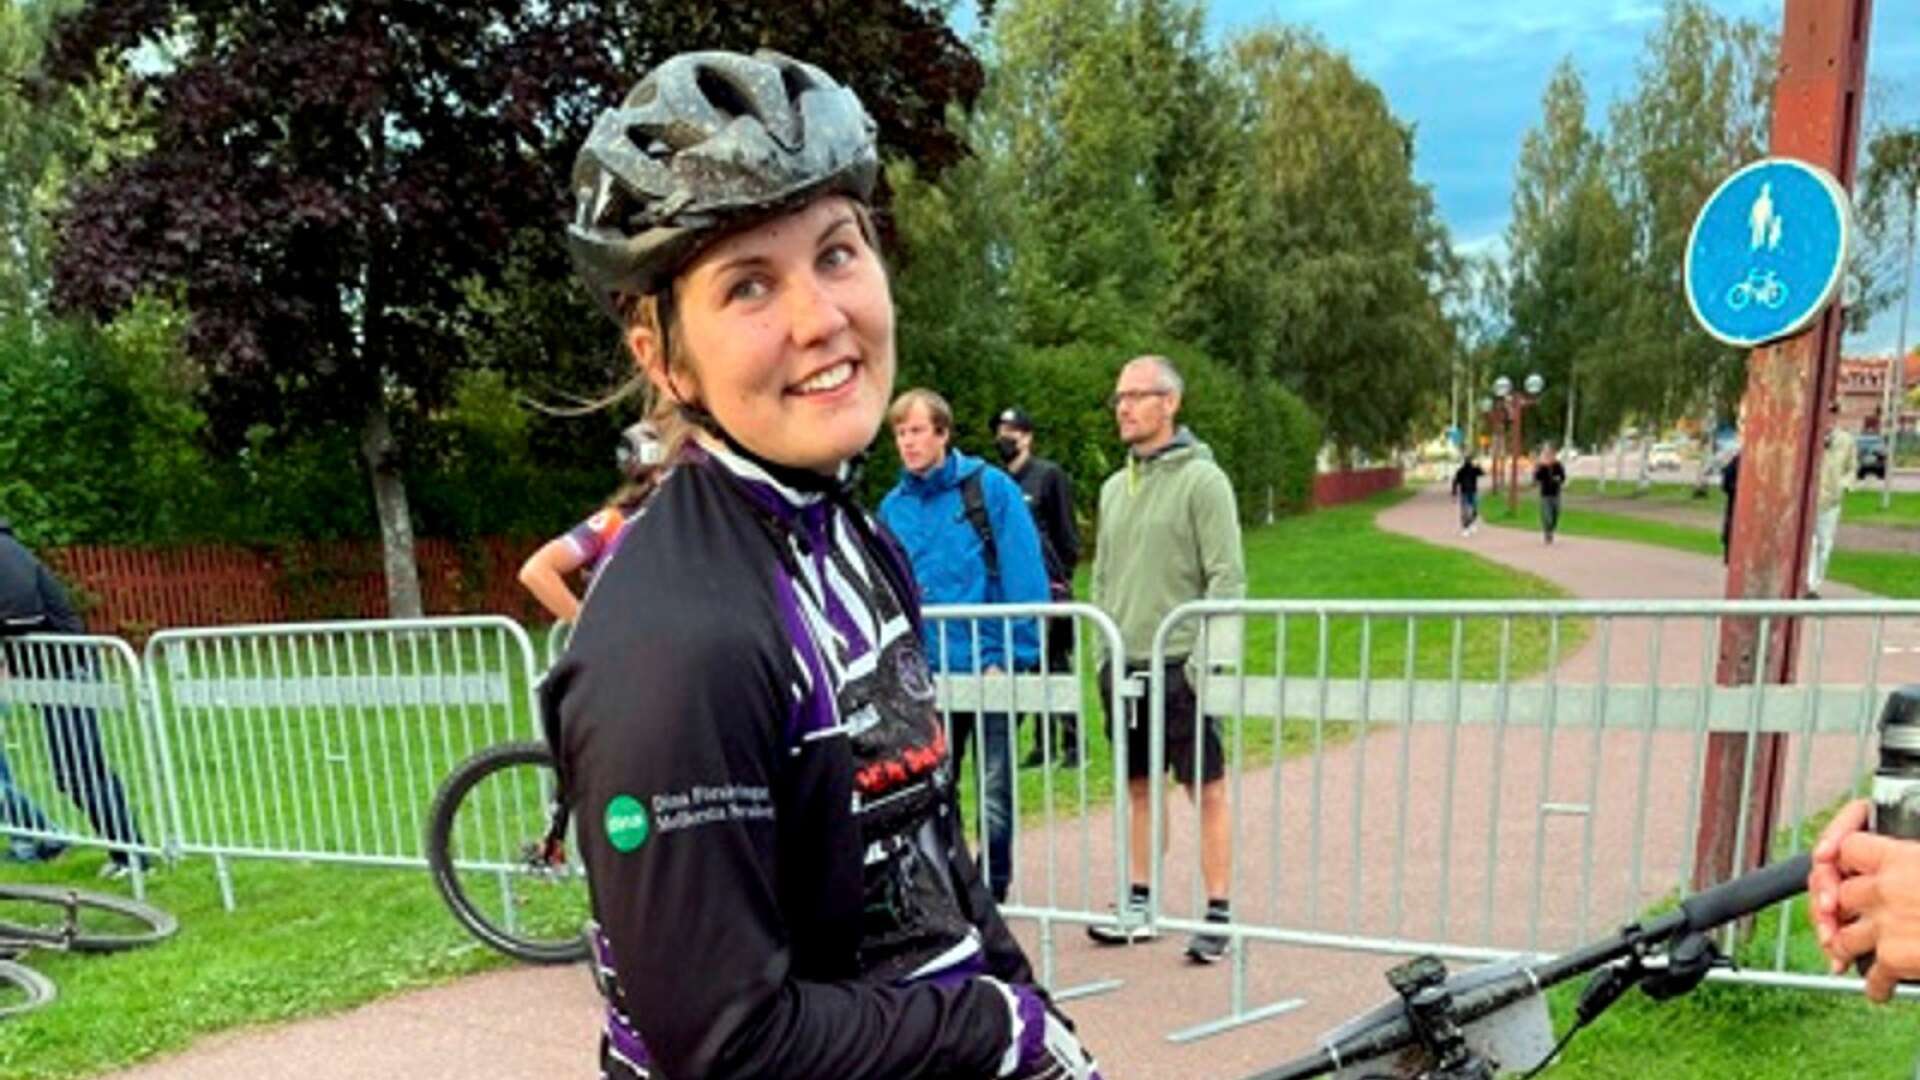 Erica Zetterlund, Hjo VK, var mycket nöjd med sin niondeplats i Cykelvasan.